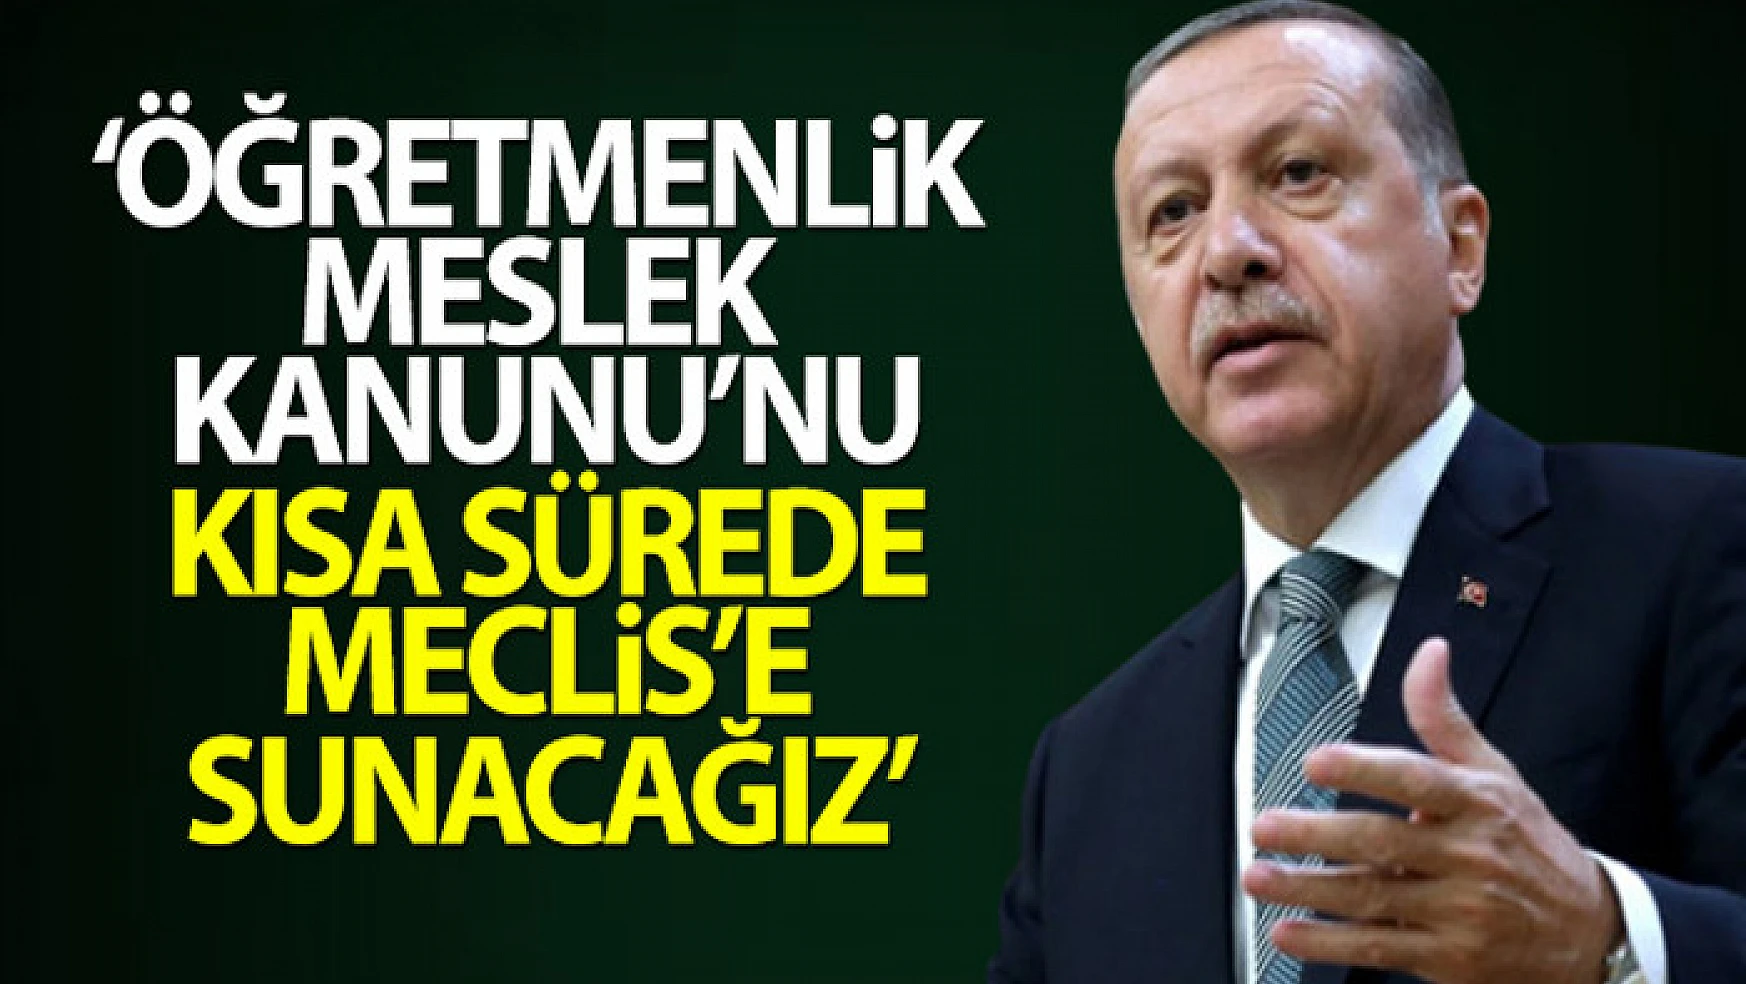 Cumhurbaşkanı Erdoğan: Öğretmenlik Meslek Kanunu'nu kısa sürede Meclis'e sunacağız